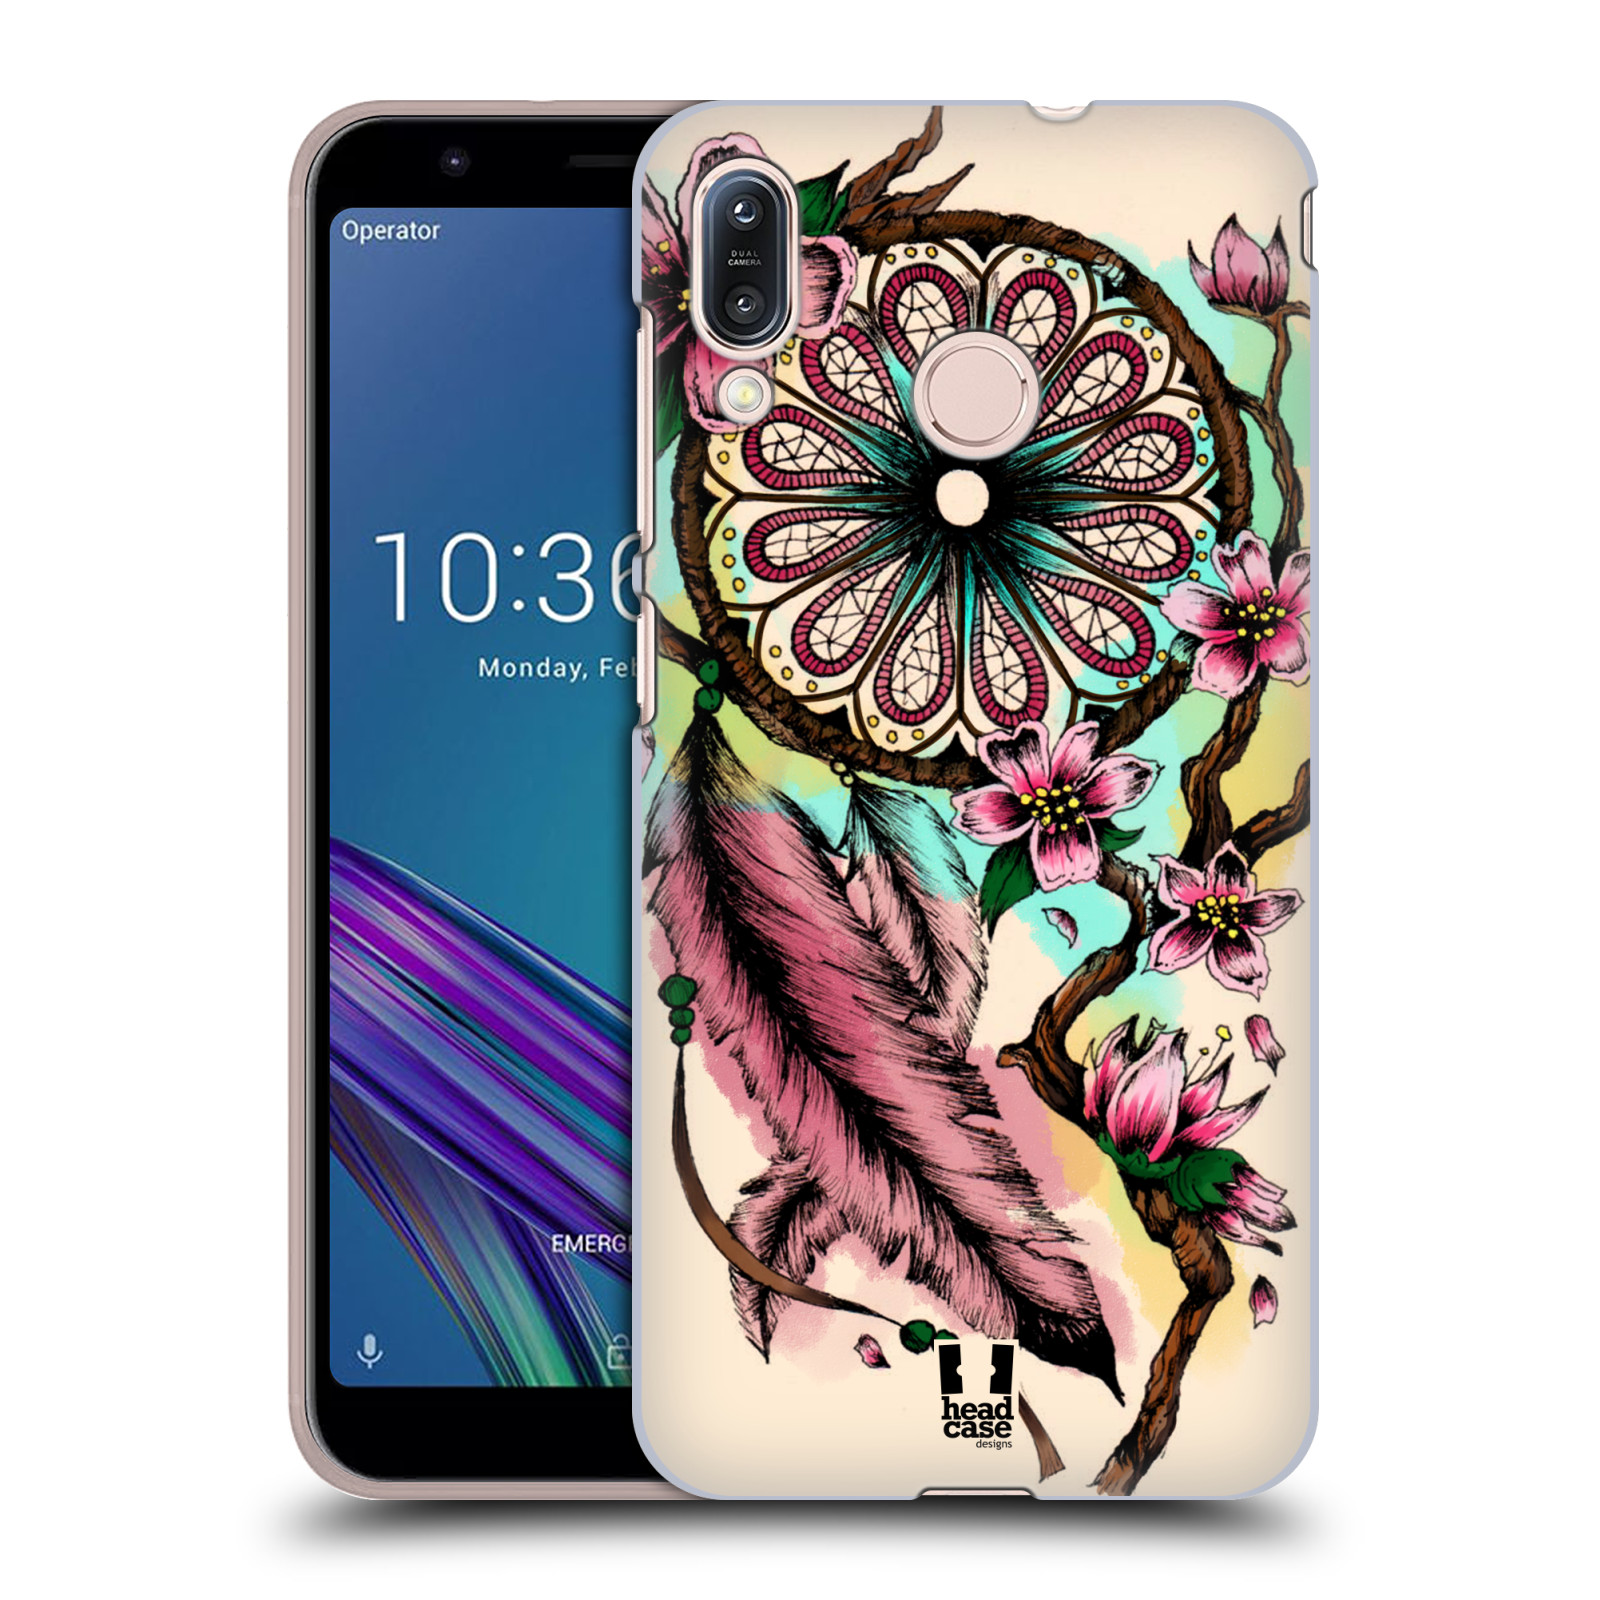 Pouzdro na mobil Asus Zenfone Max M1 (ZB555KL) - HEAD CASE - vzor Květy lapač snů růžová